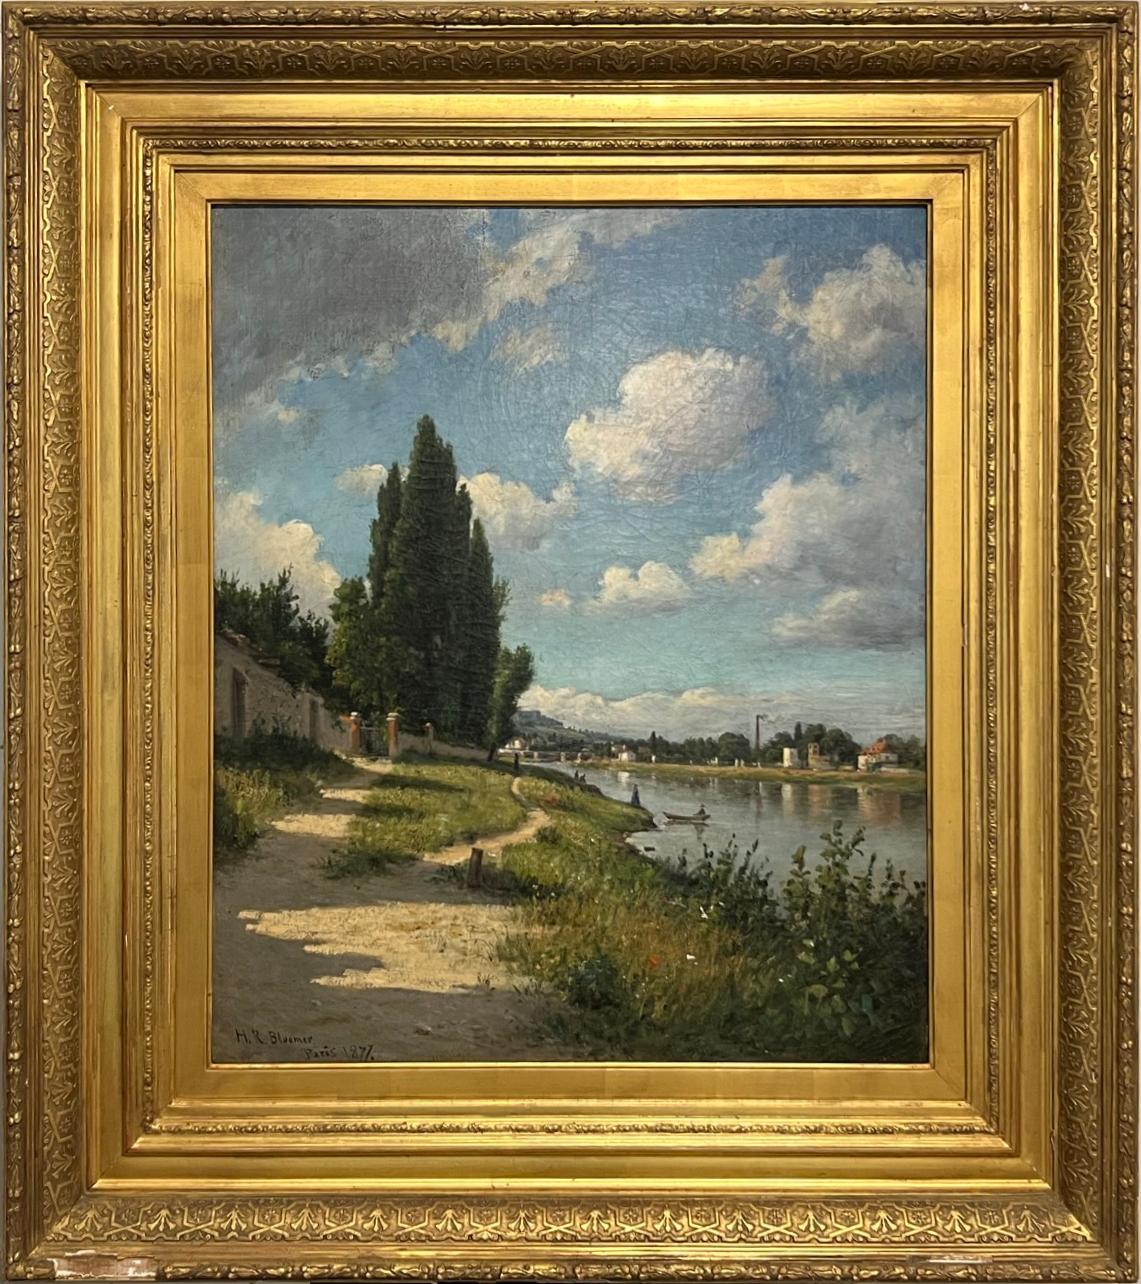 Landscape Painting  Hiram Reynolds Bloomer - Peinture impressionniste américaine du 19ème siècle représentant une scène de rivière française